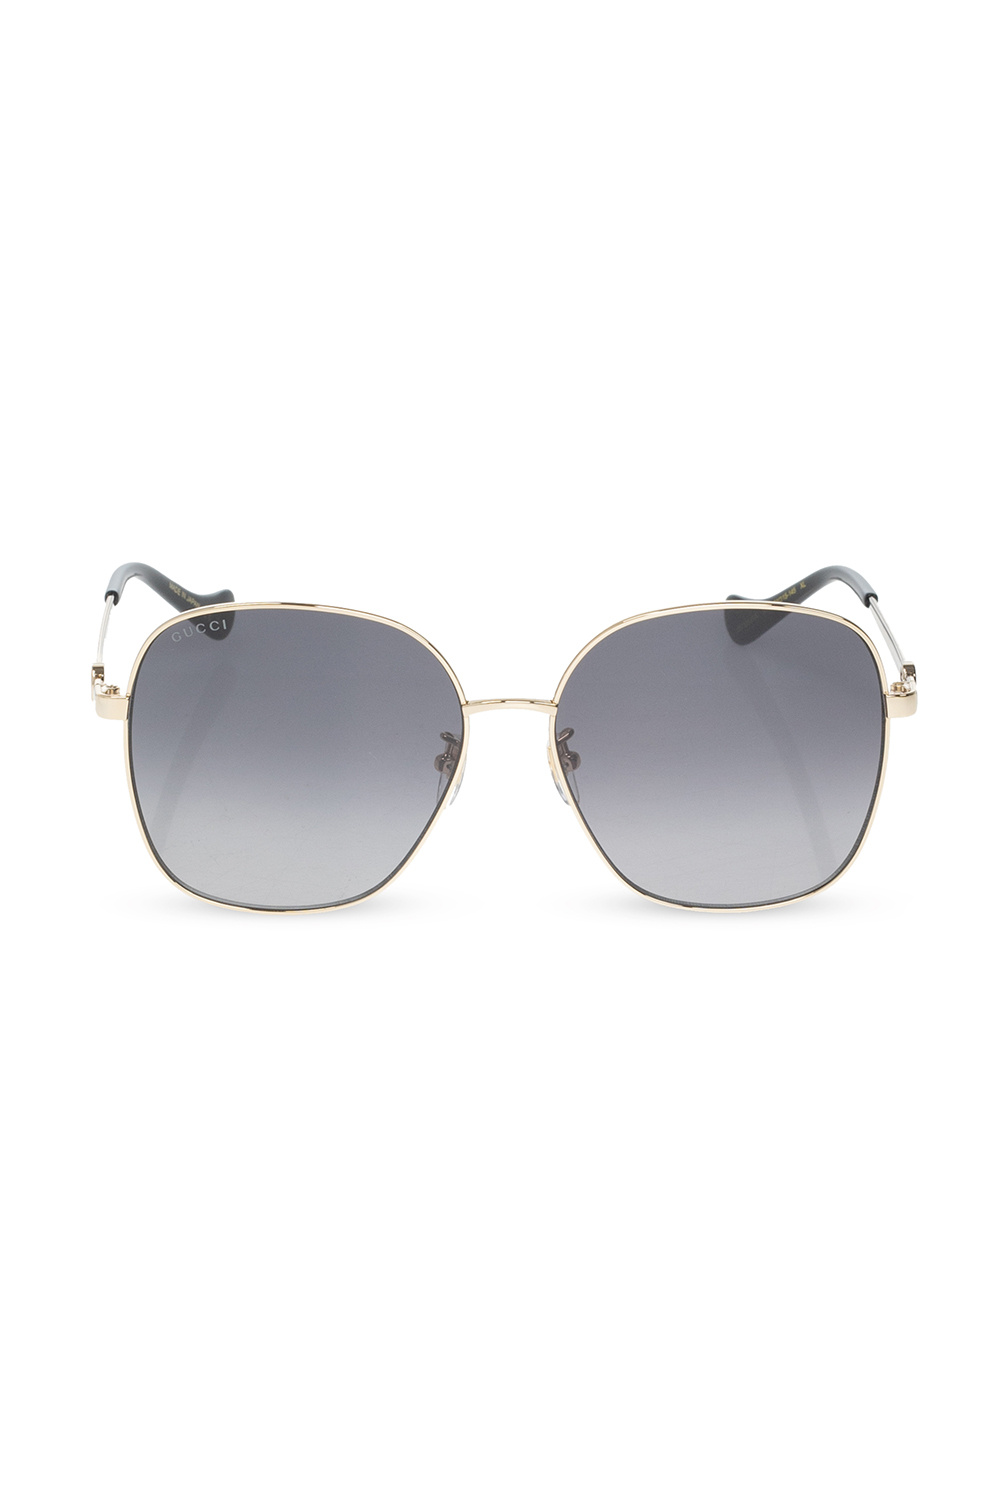 Gucci emporio armani foldover lense sunglasses item